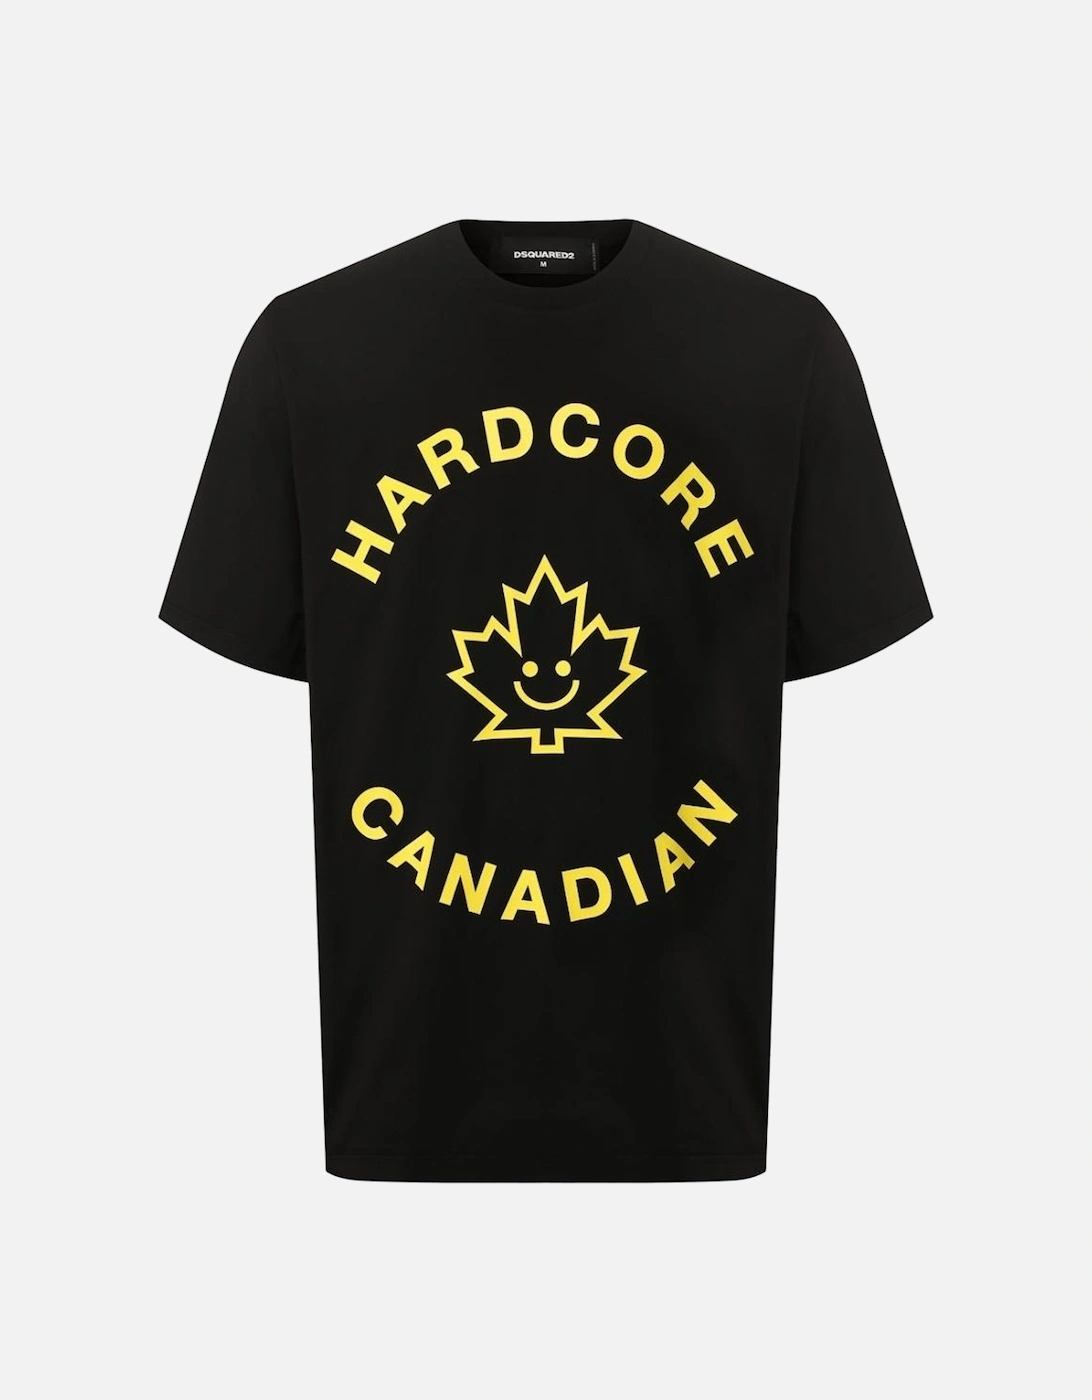 Hardcore Canadian Maple Leaf Black T-Shirt, 3 of 2